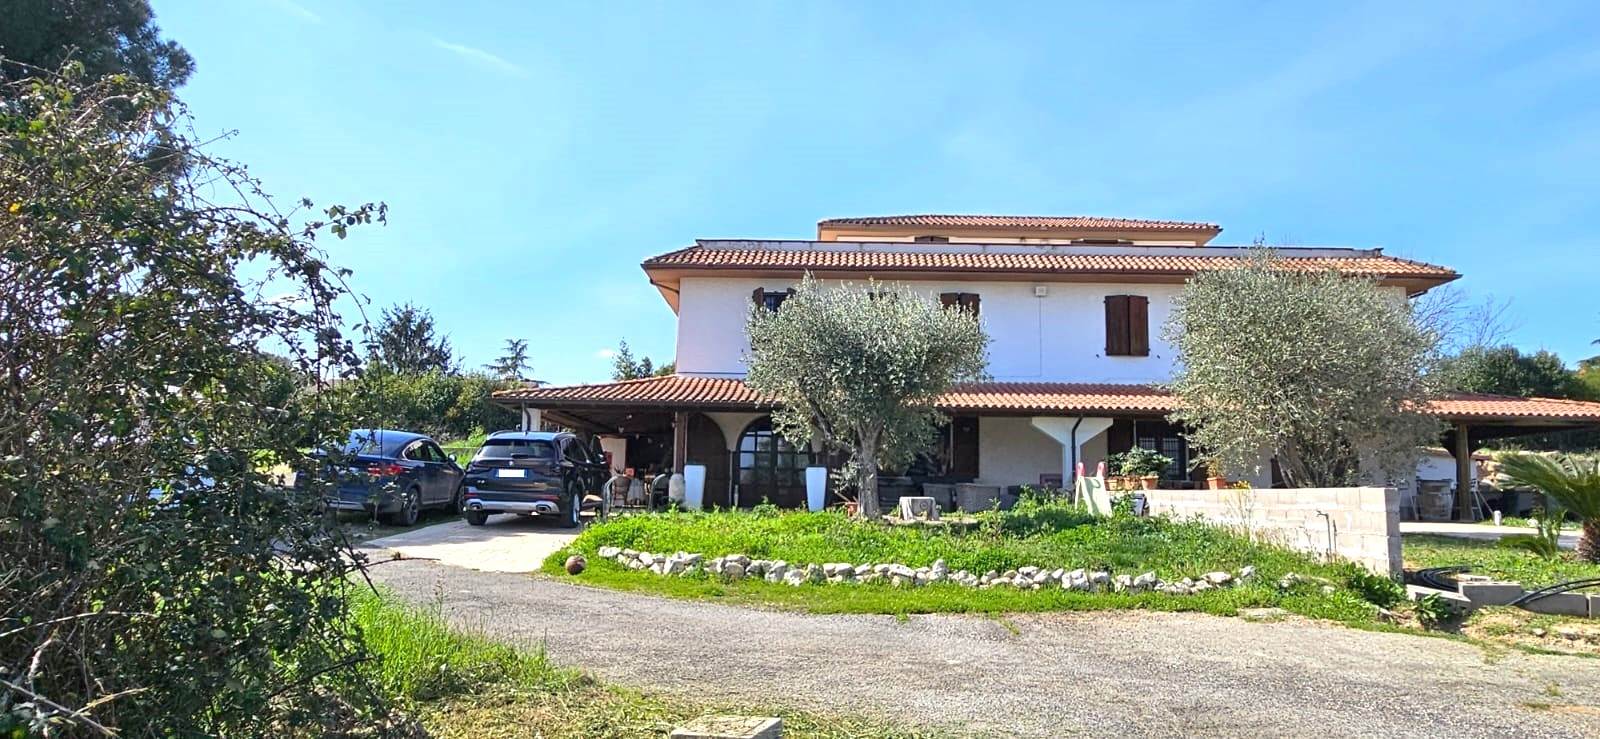 Villa Bifamiliare in vendita a Fiano Romano